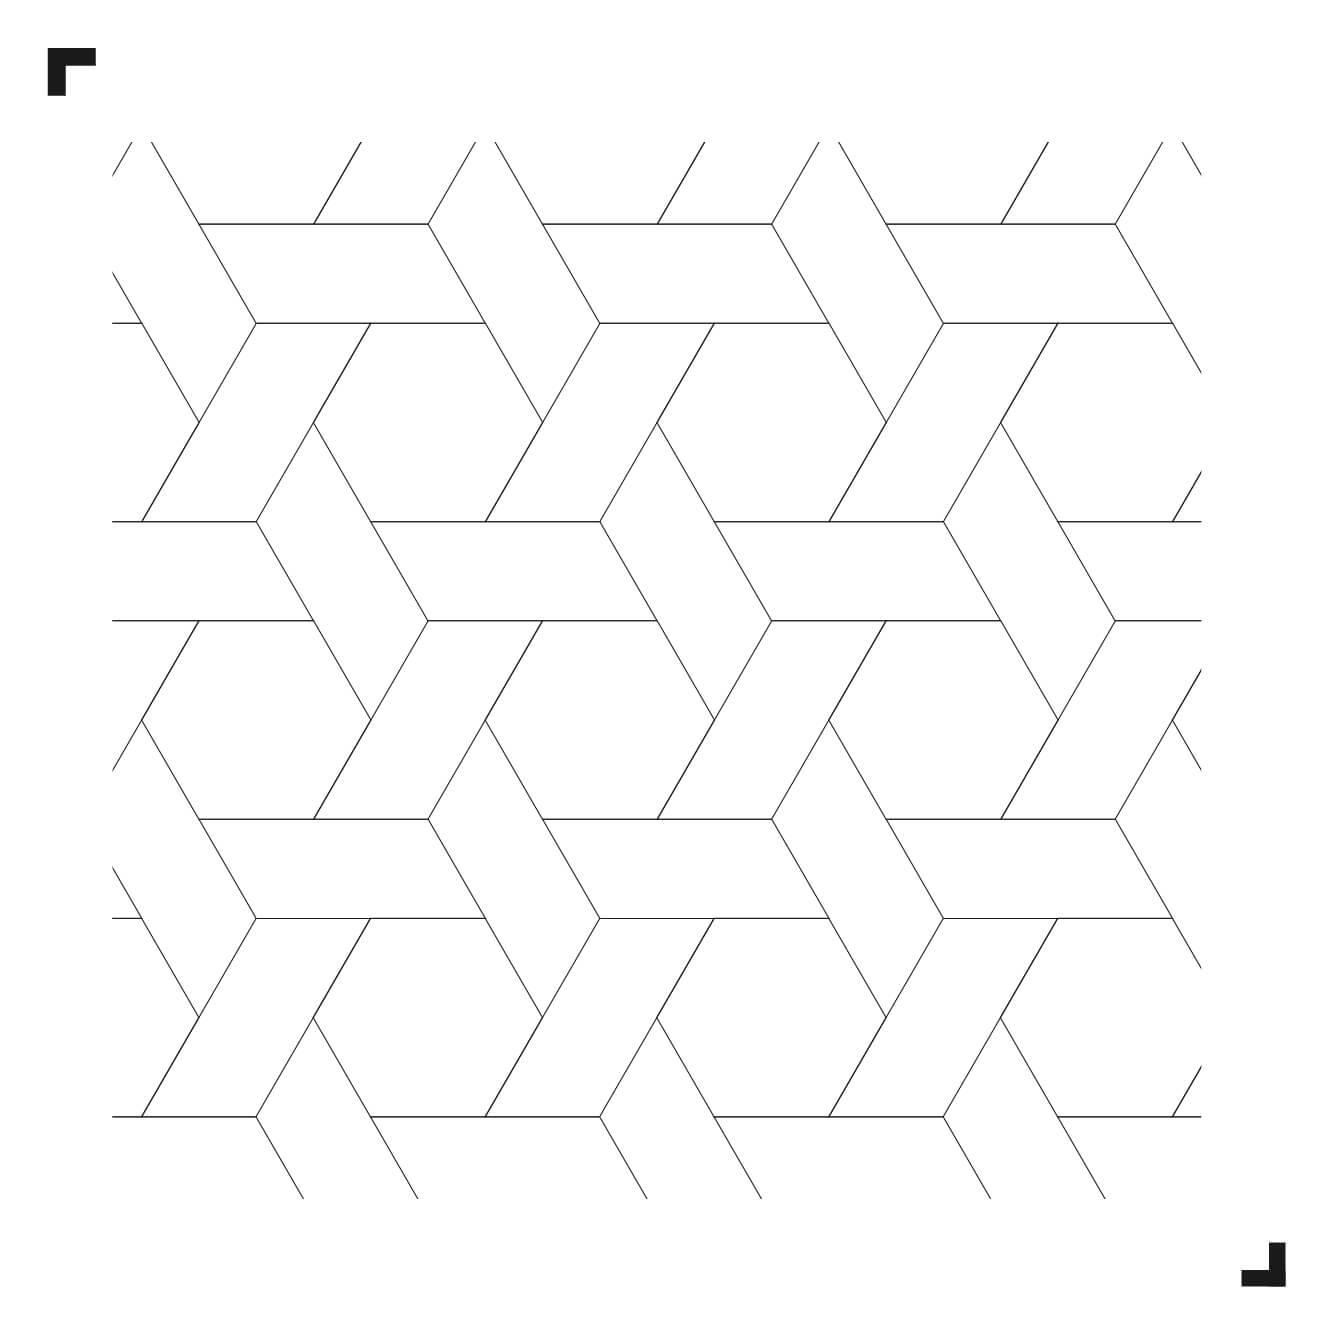 zwart-wit tekening van het Wicker patroon - Moduleo Moods - luxe vinyl tegels - Creatieve vloeren